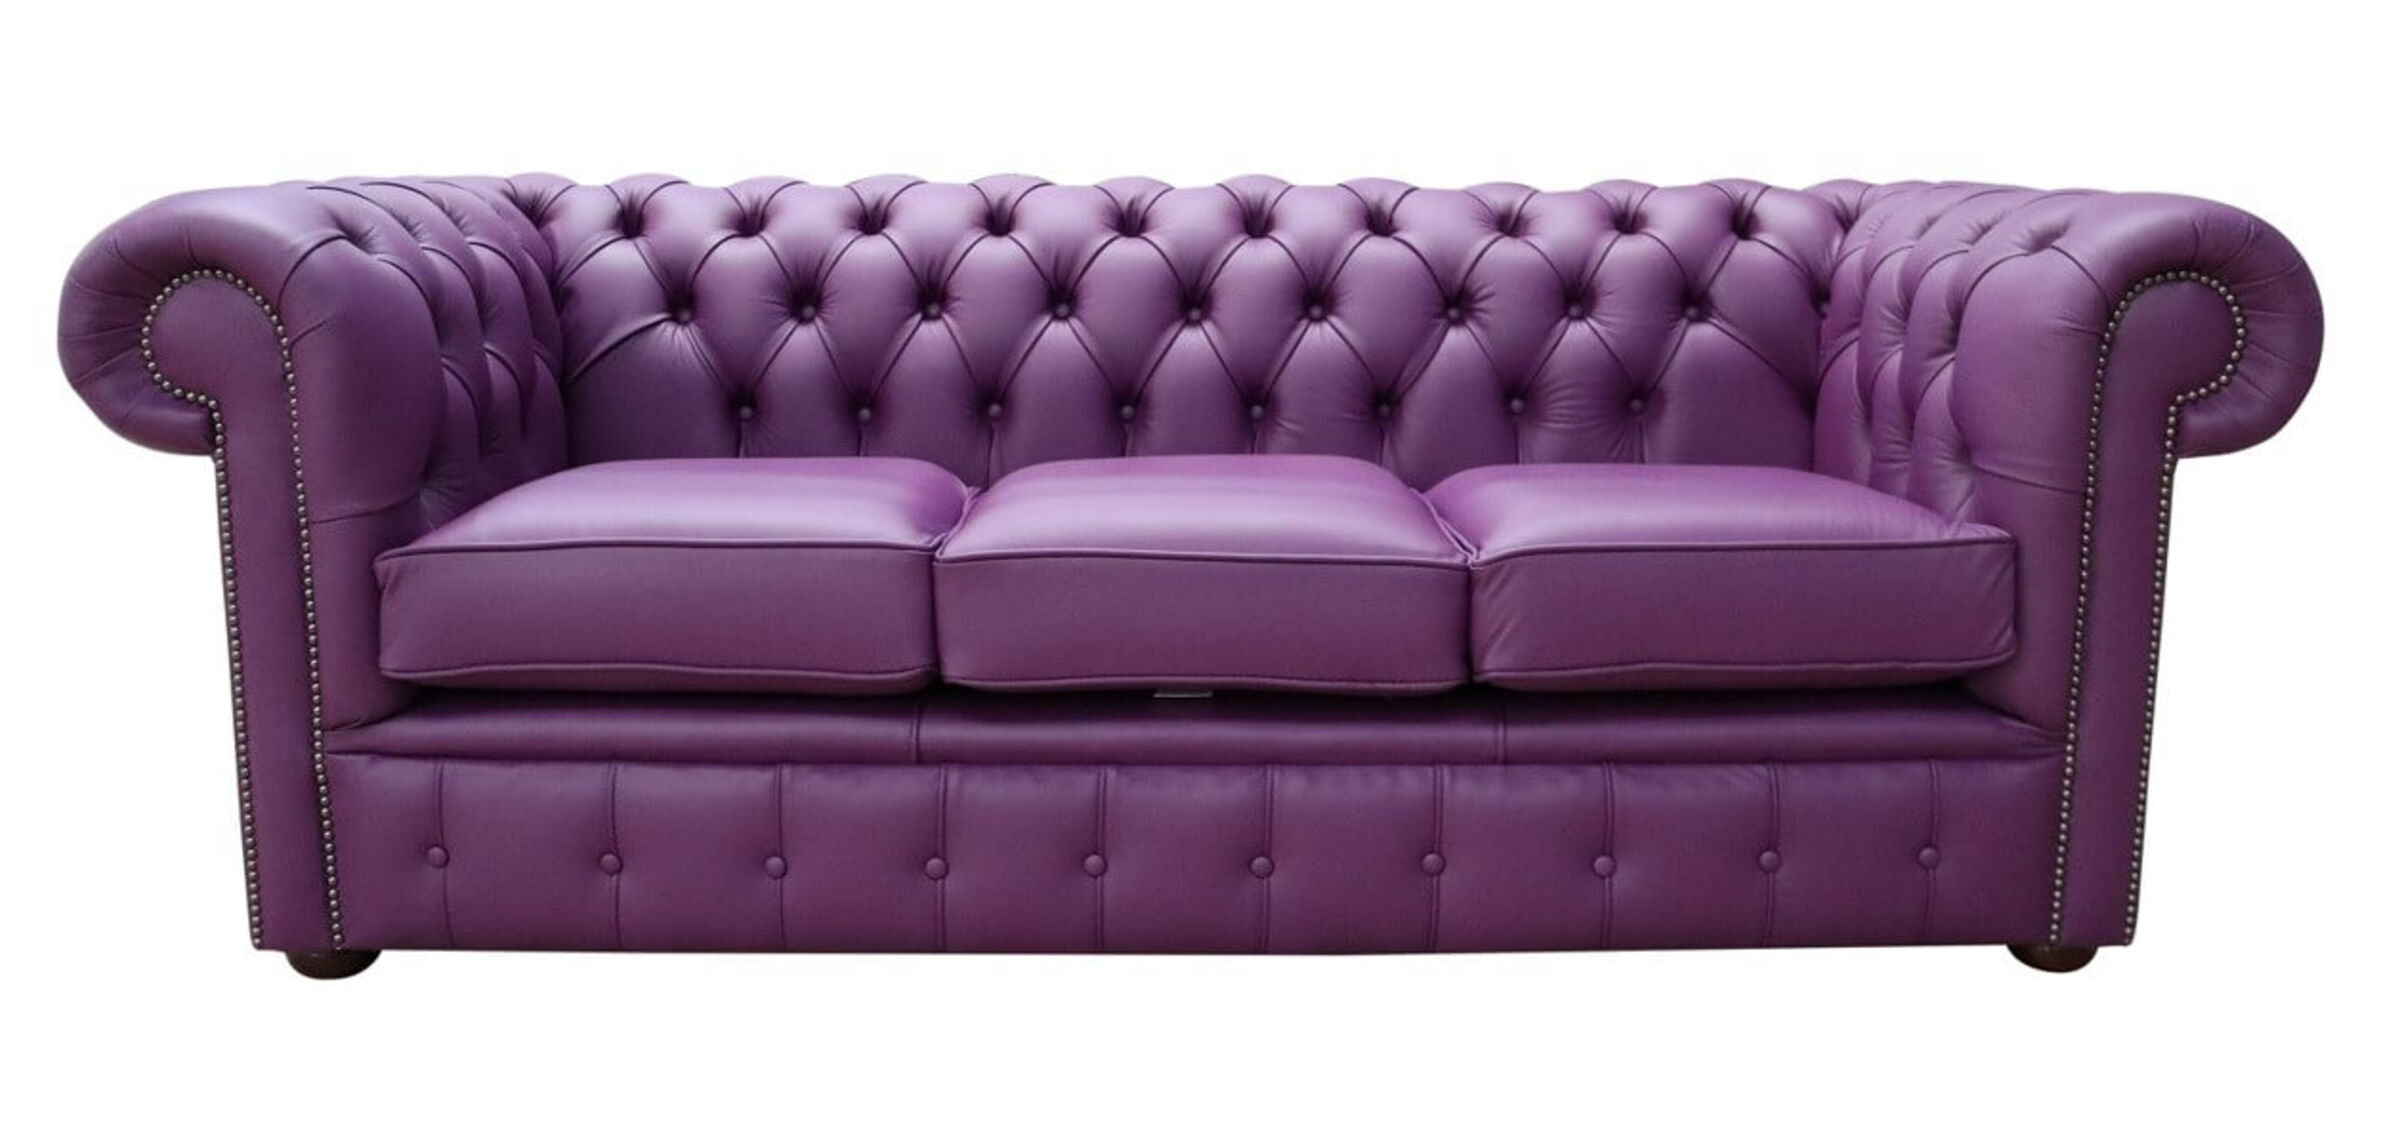 himolla purple leather sofa